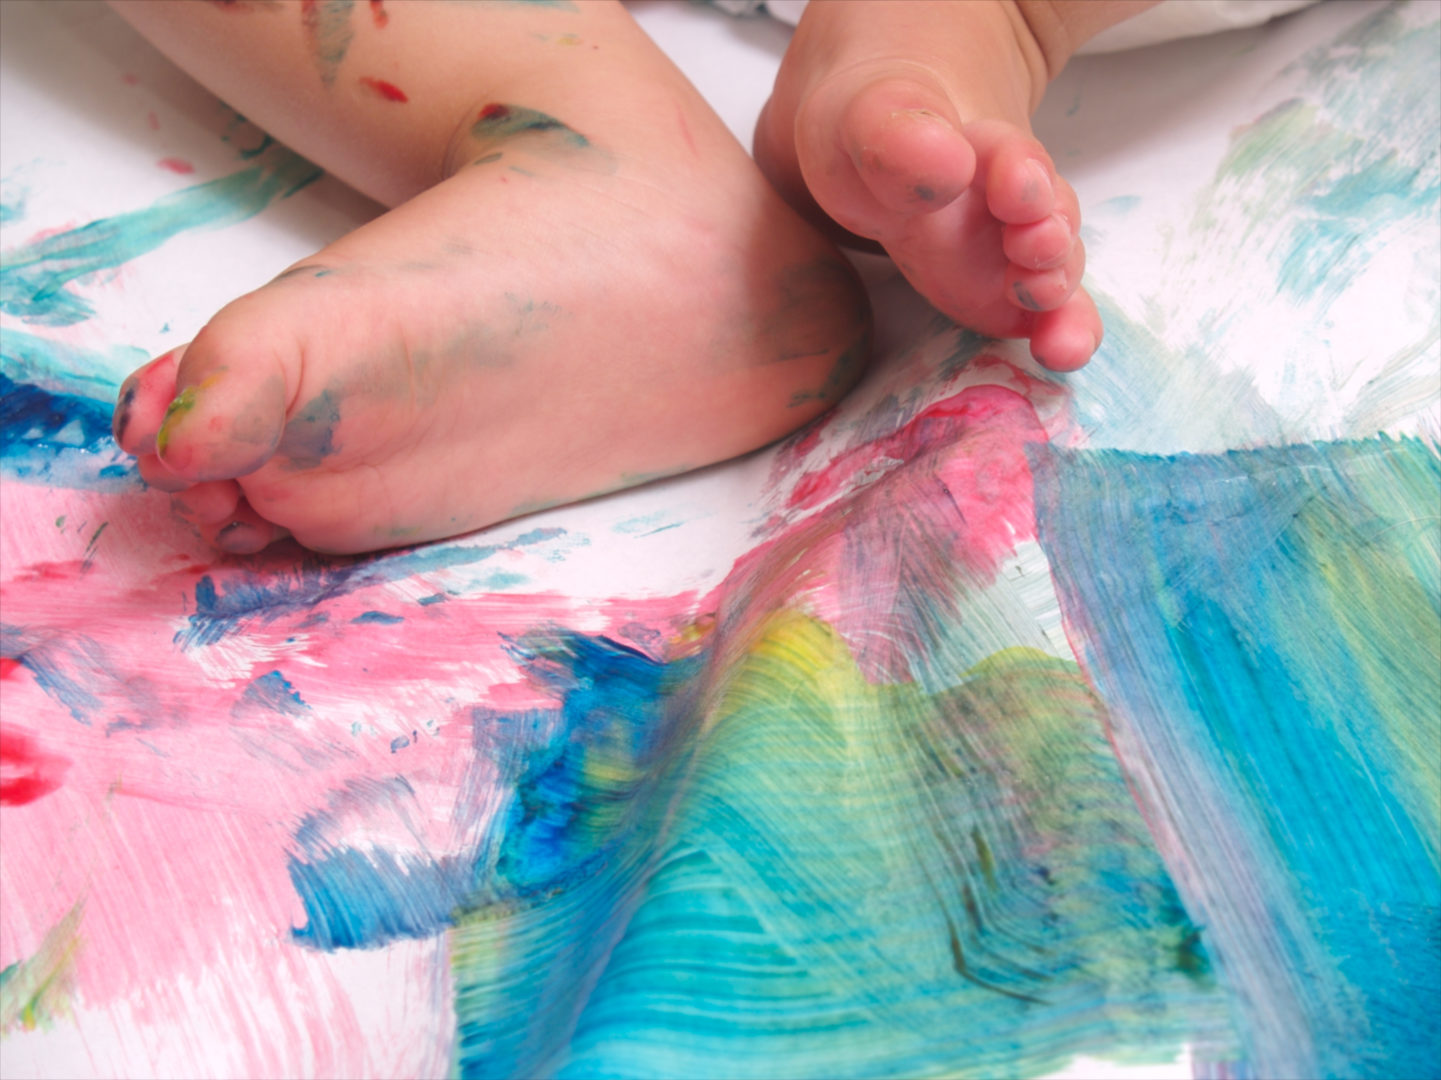 Tintas comestíveis para bebês: foto de pés de um bebê de pele clara em uma superfície com tinta colorida.